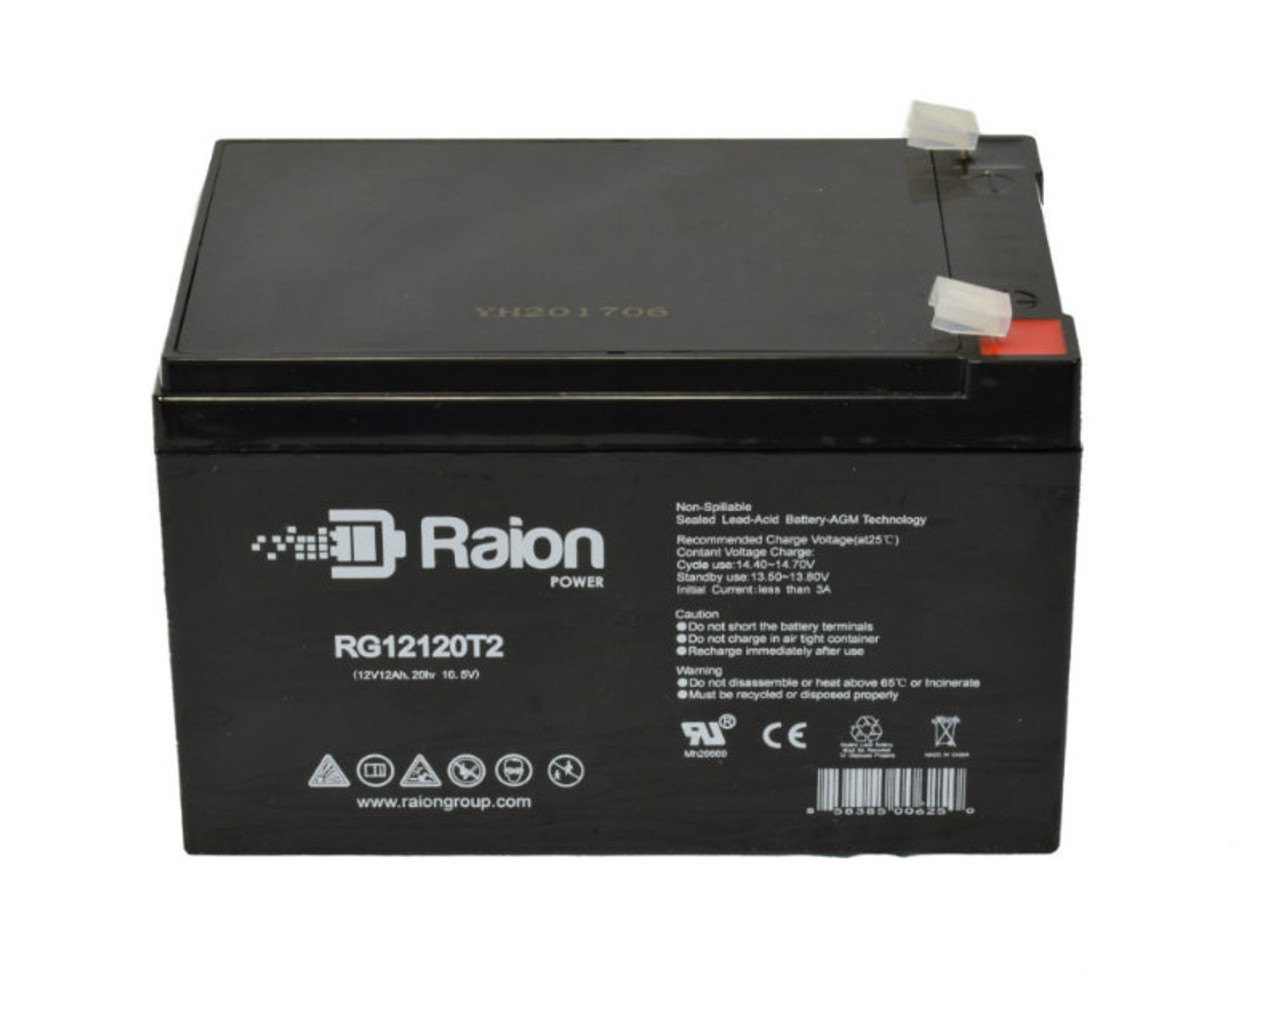 Raion Power RG12120T2 SLA Battery for Alarmtec BP12-12